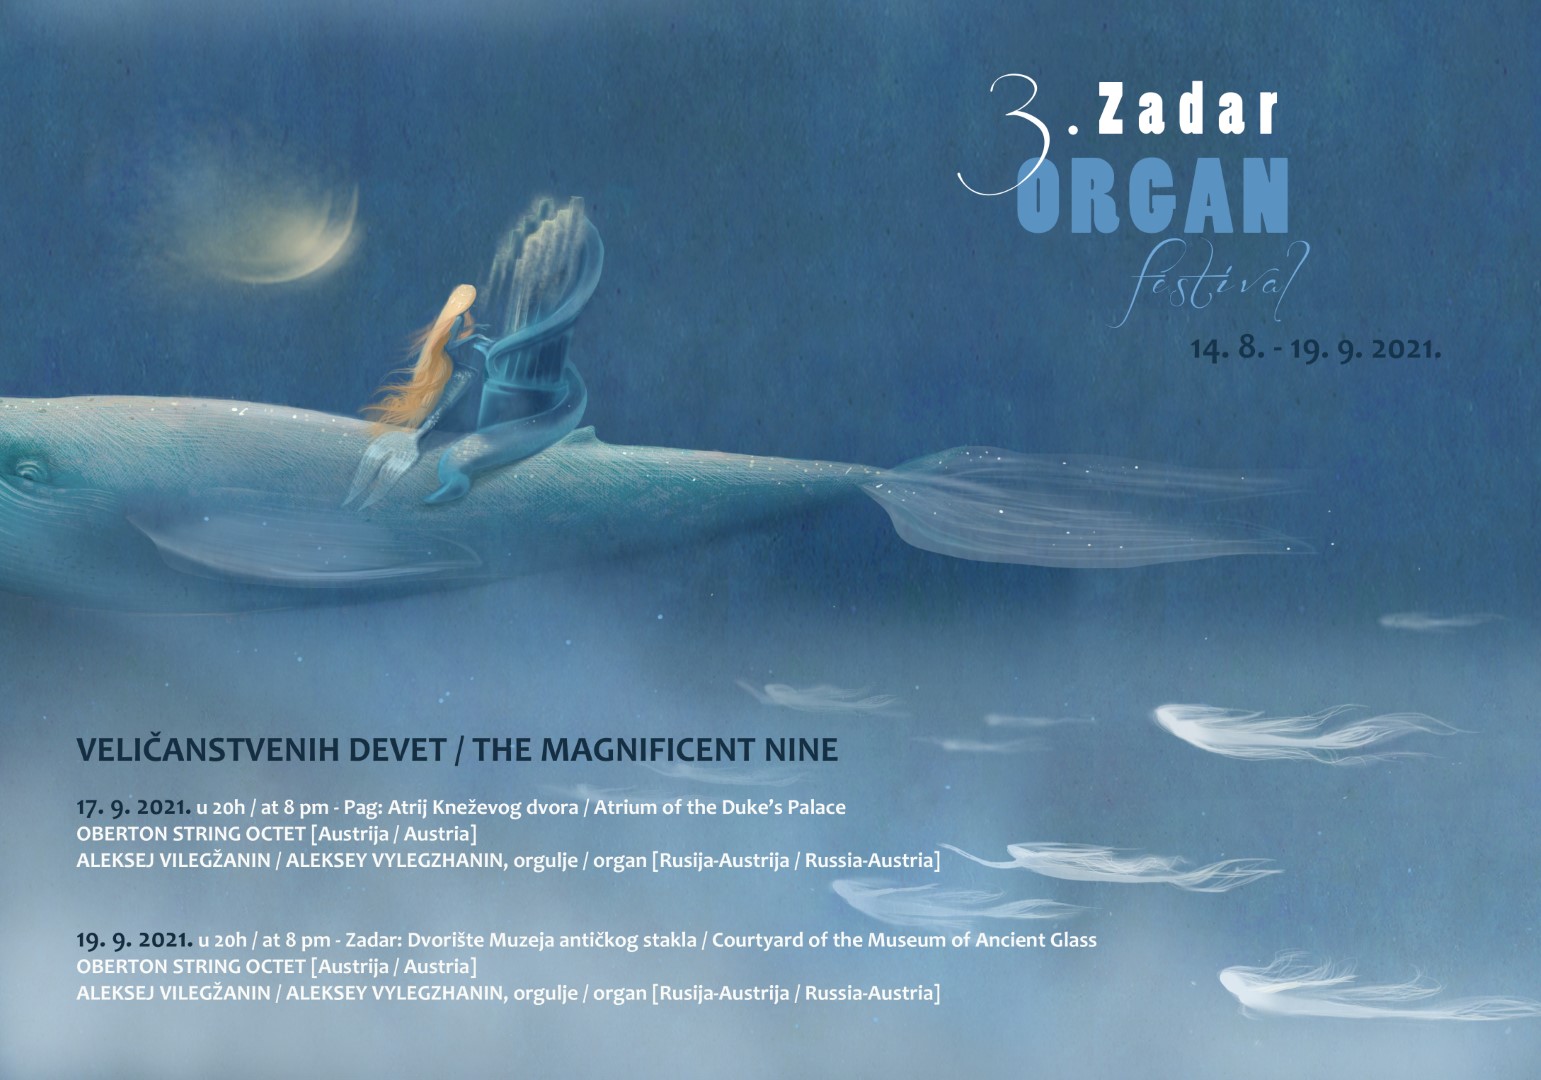 3. Zadar Organ Festival Veličanstvenih devet